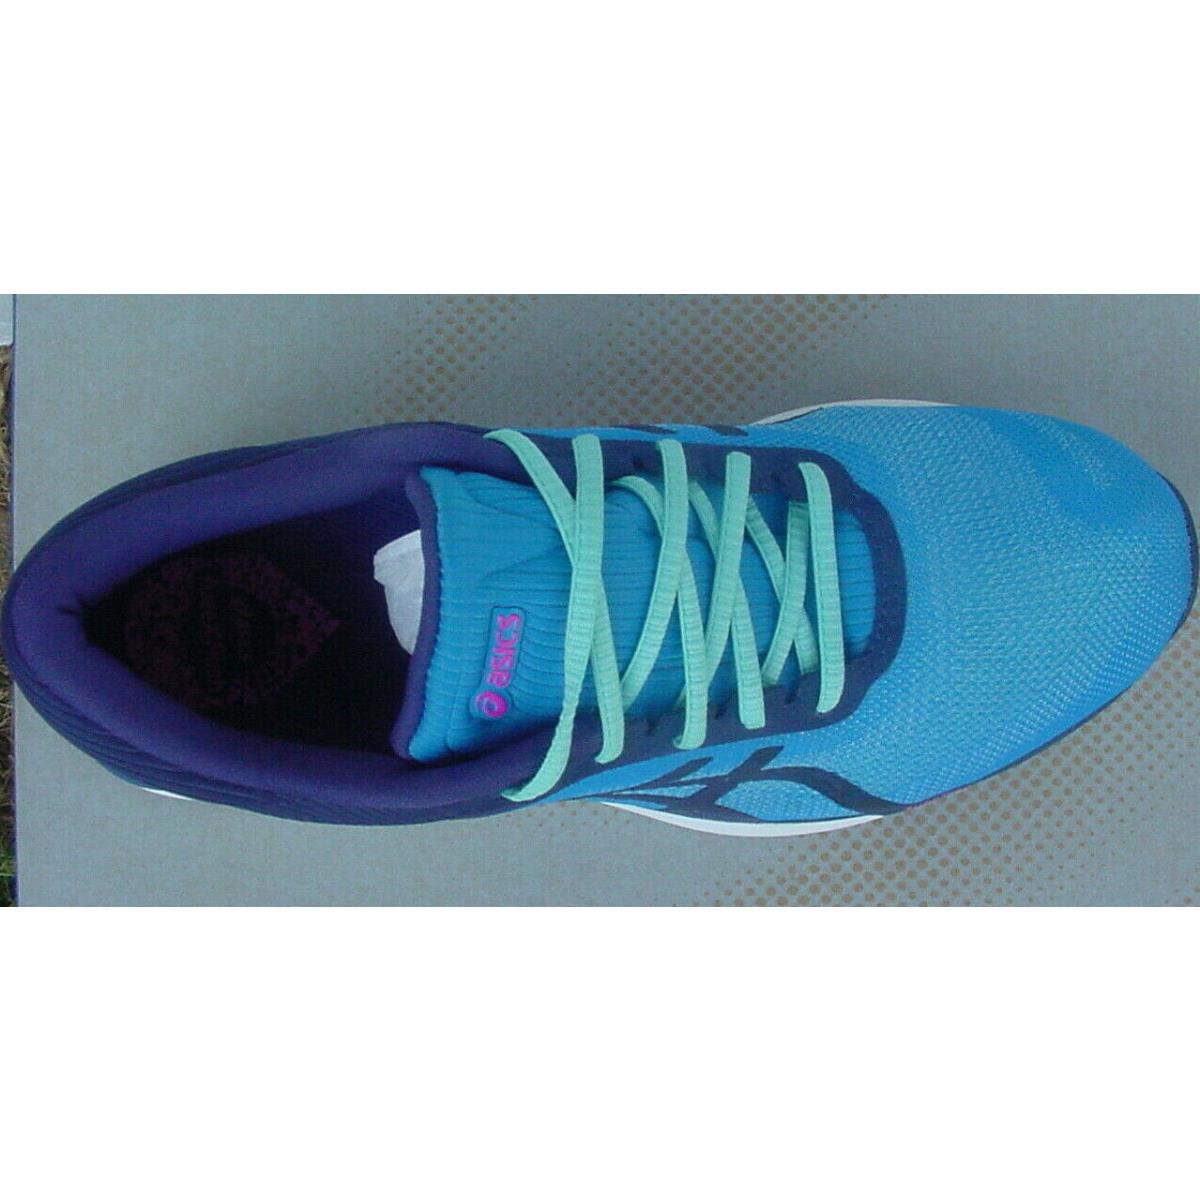 ASICS shoes  - Blue Navy Aqua Green 4